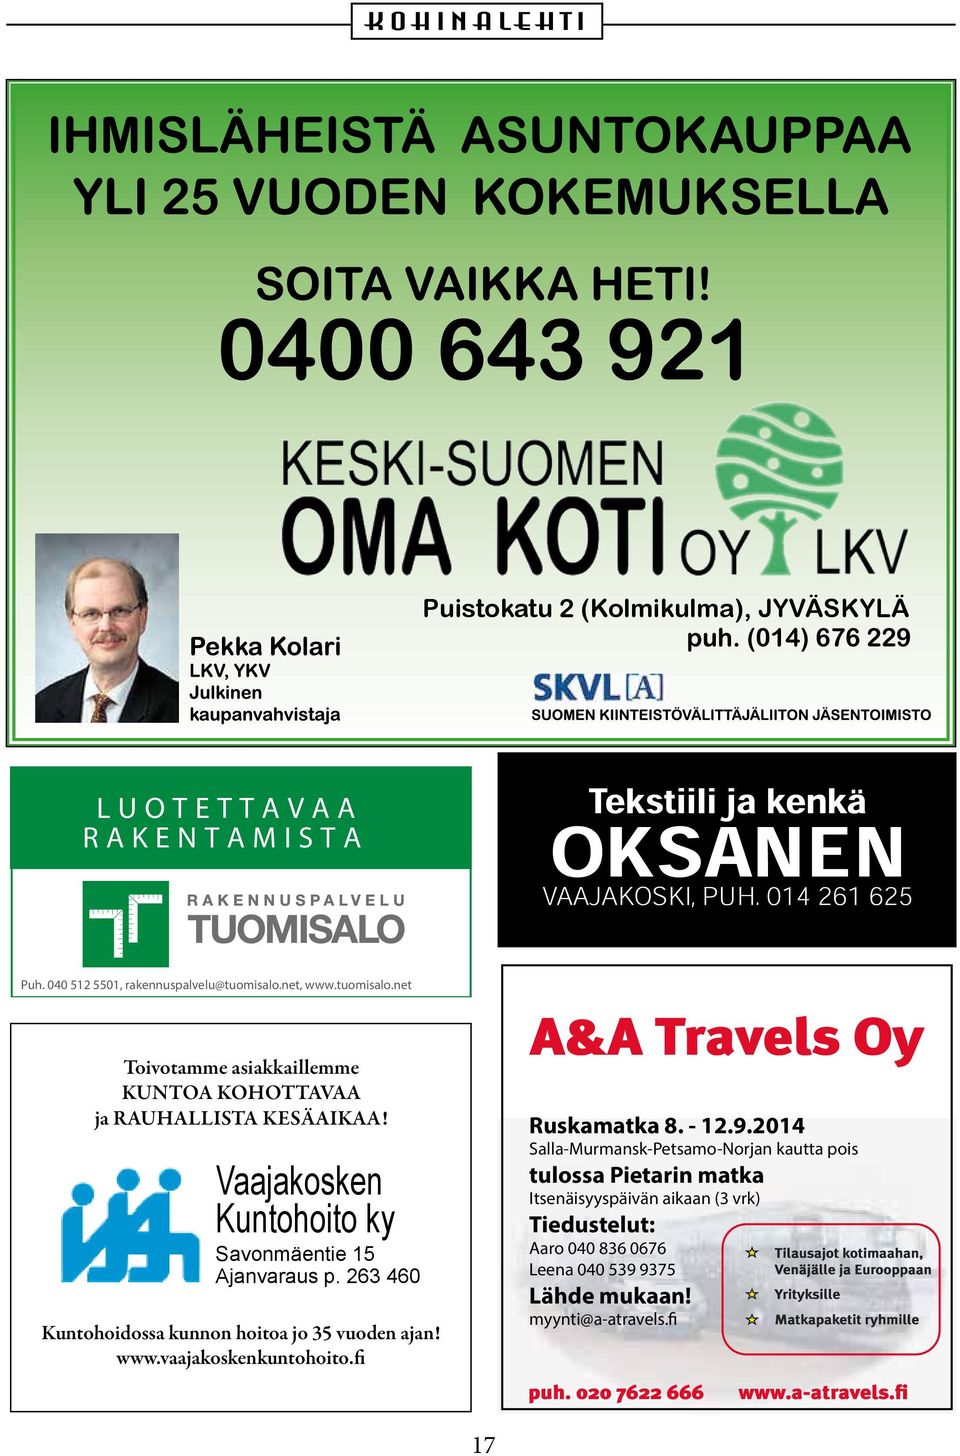 Vaajakosken Kuntohoito ky Savonmäentie 15 Ajanvaraus p. 263 460 Kuntohoidossa kunnon hoitoa jo 35 vuoden ajan! www.vaajakoskenkuntohoito.